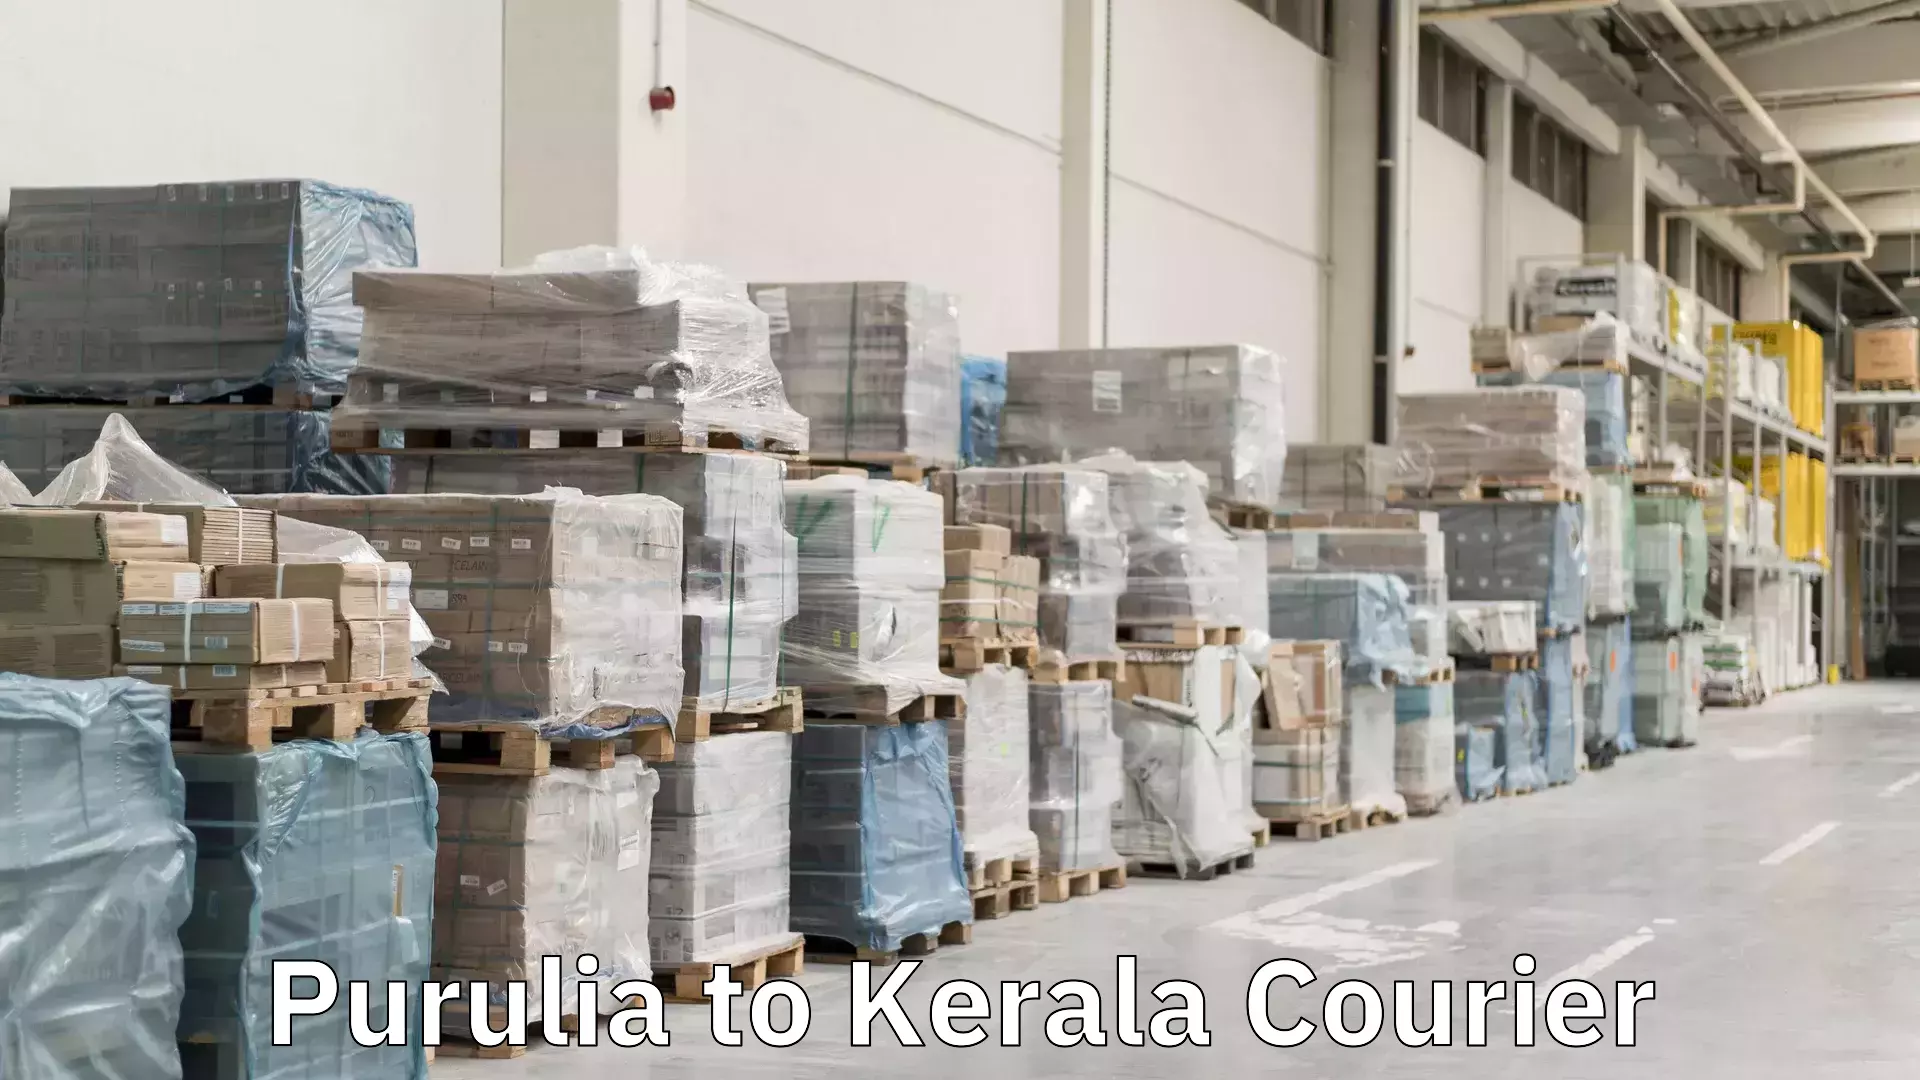 Courier service comparison Purulia to Kerala